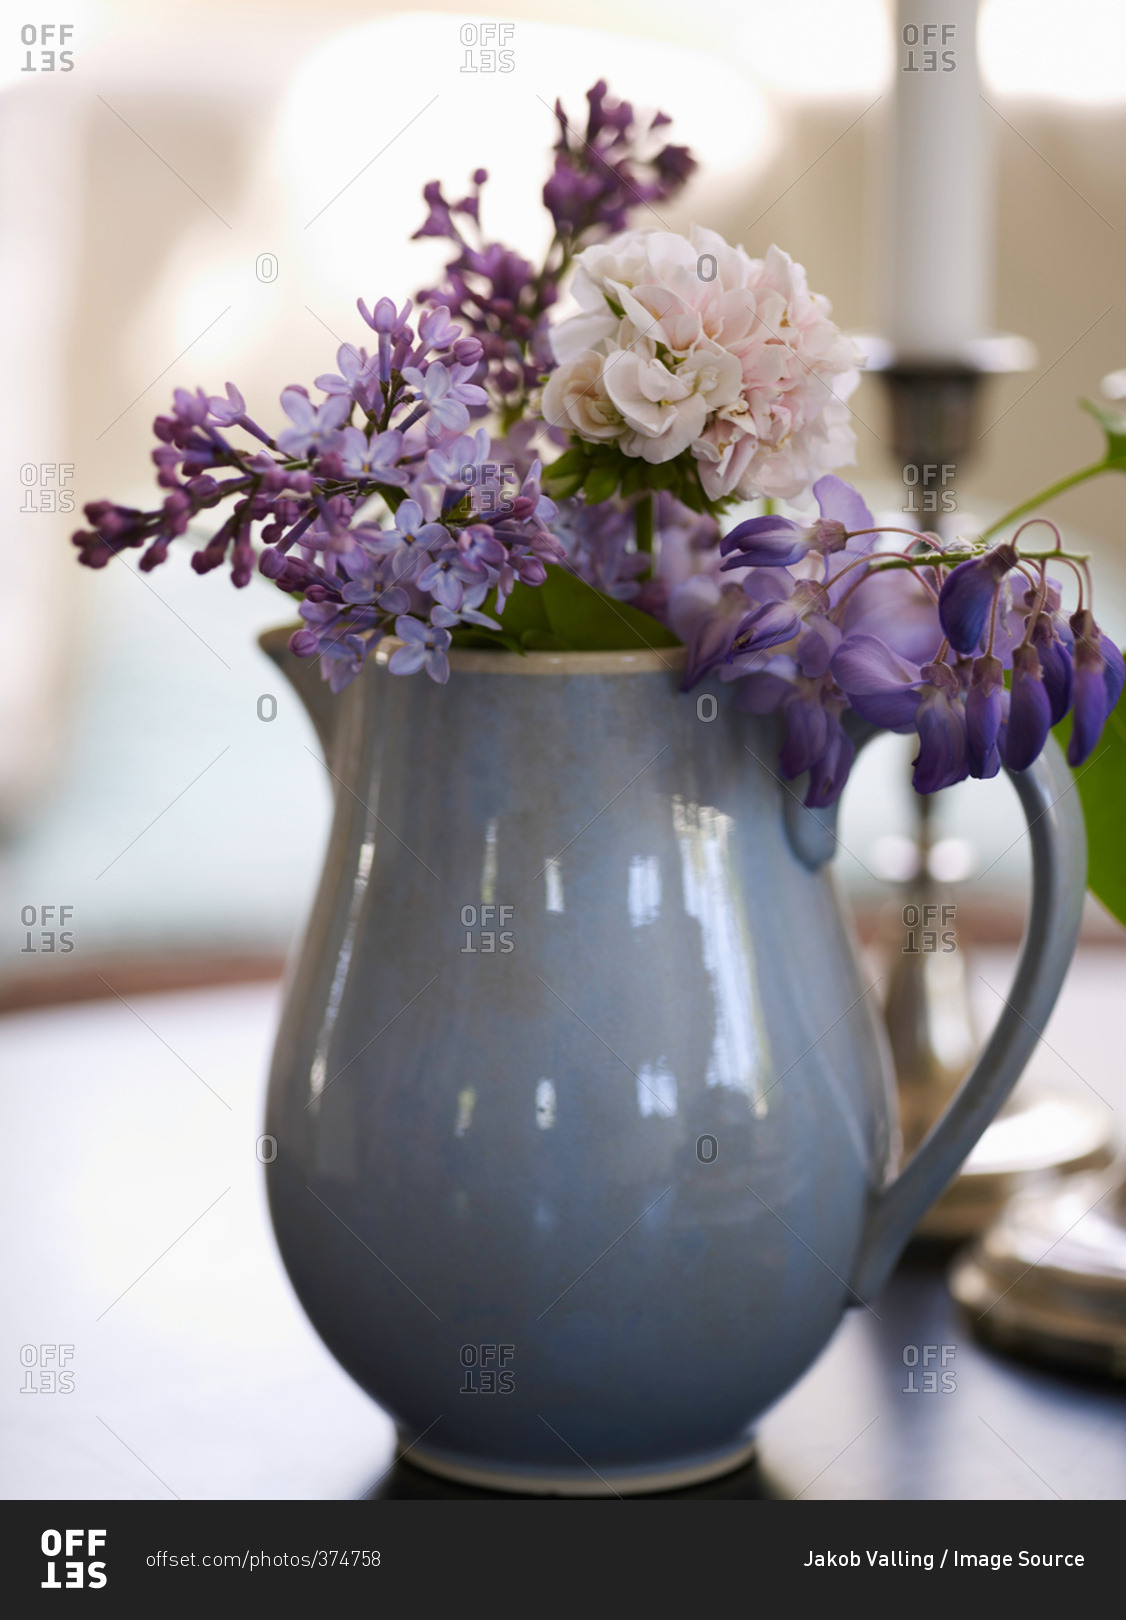 Vase of purple flowers on table